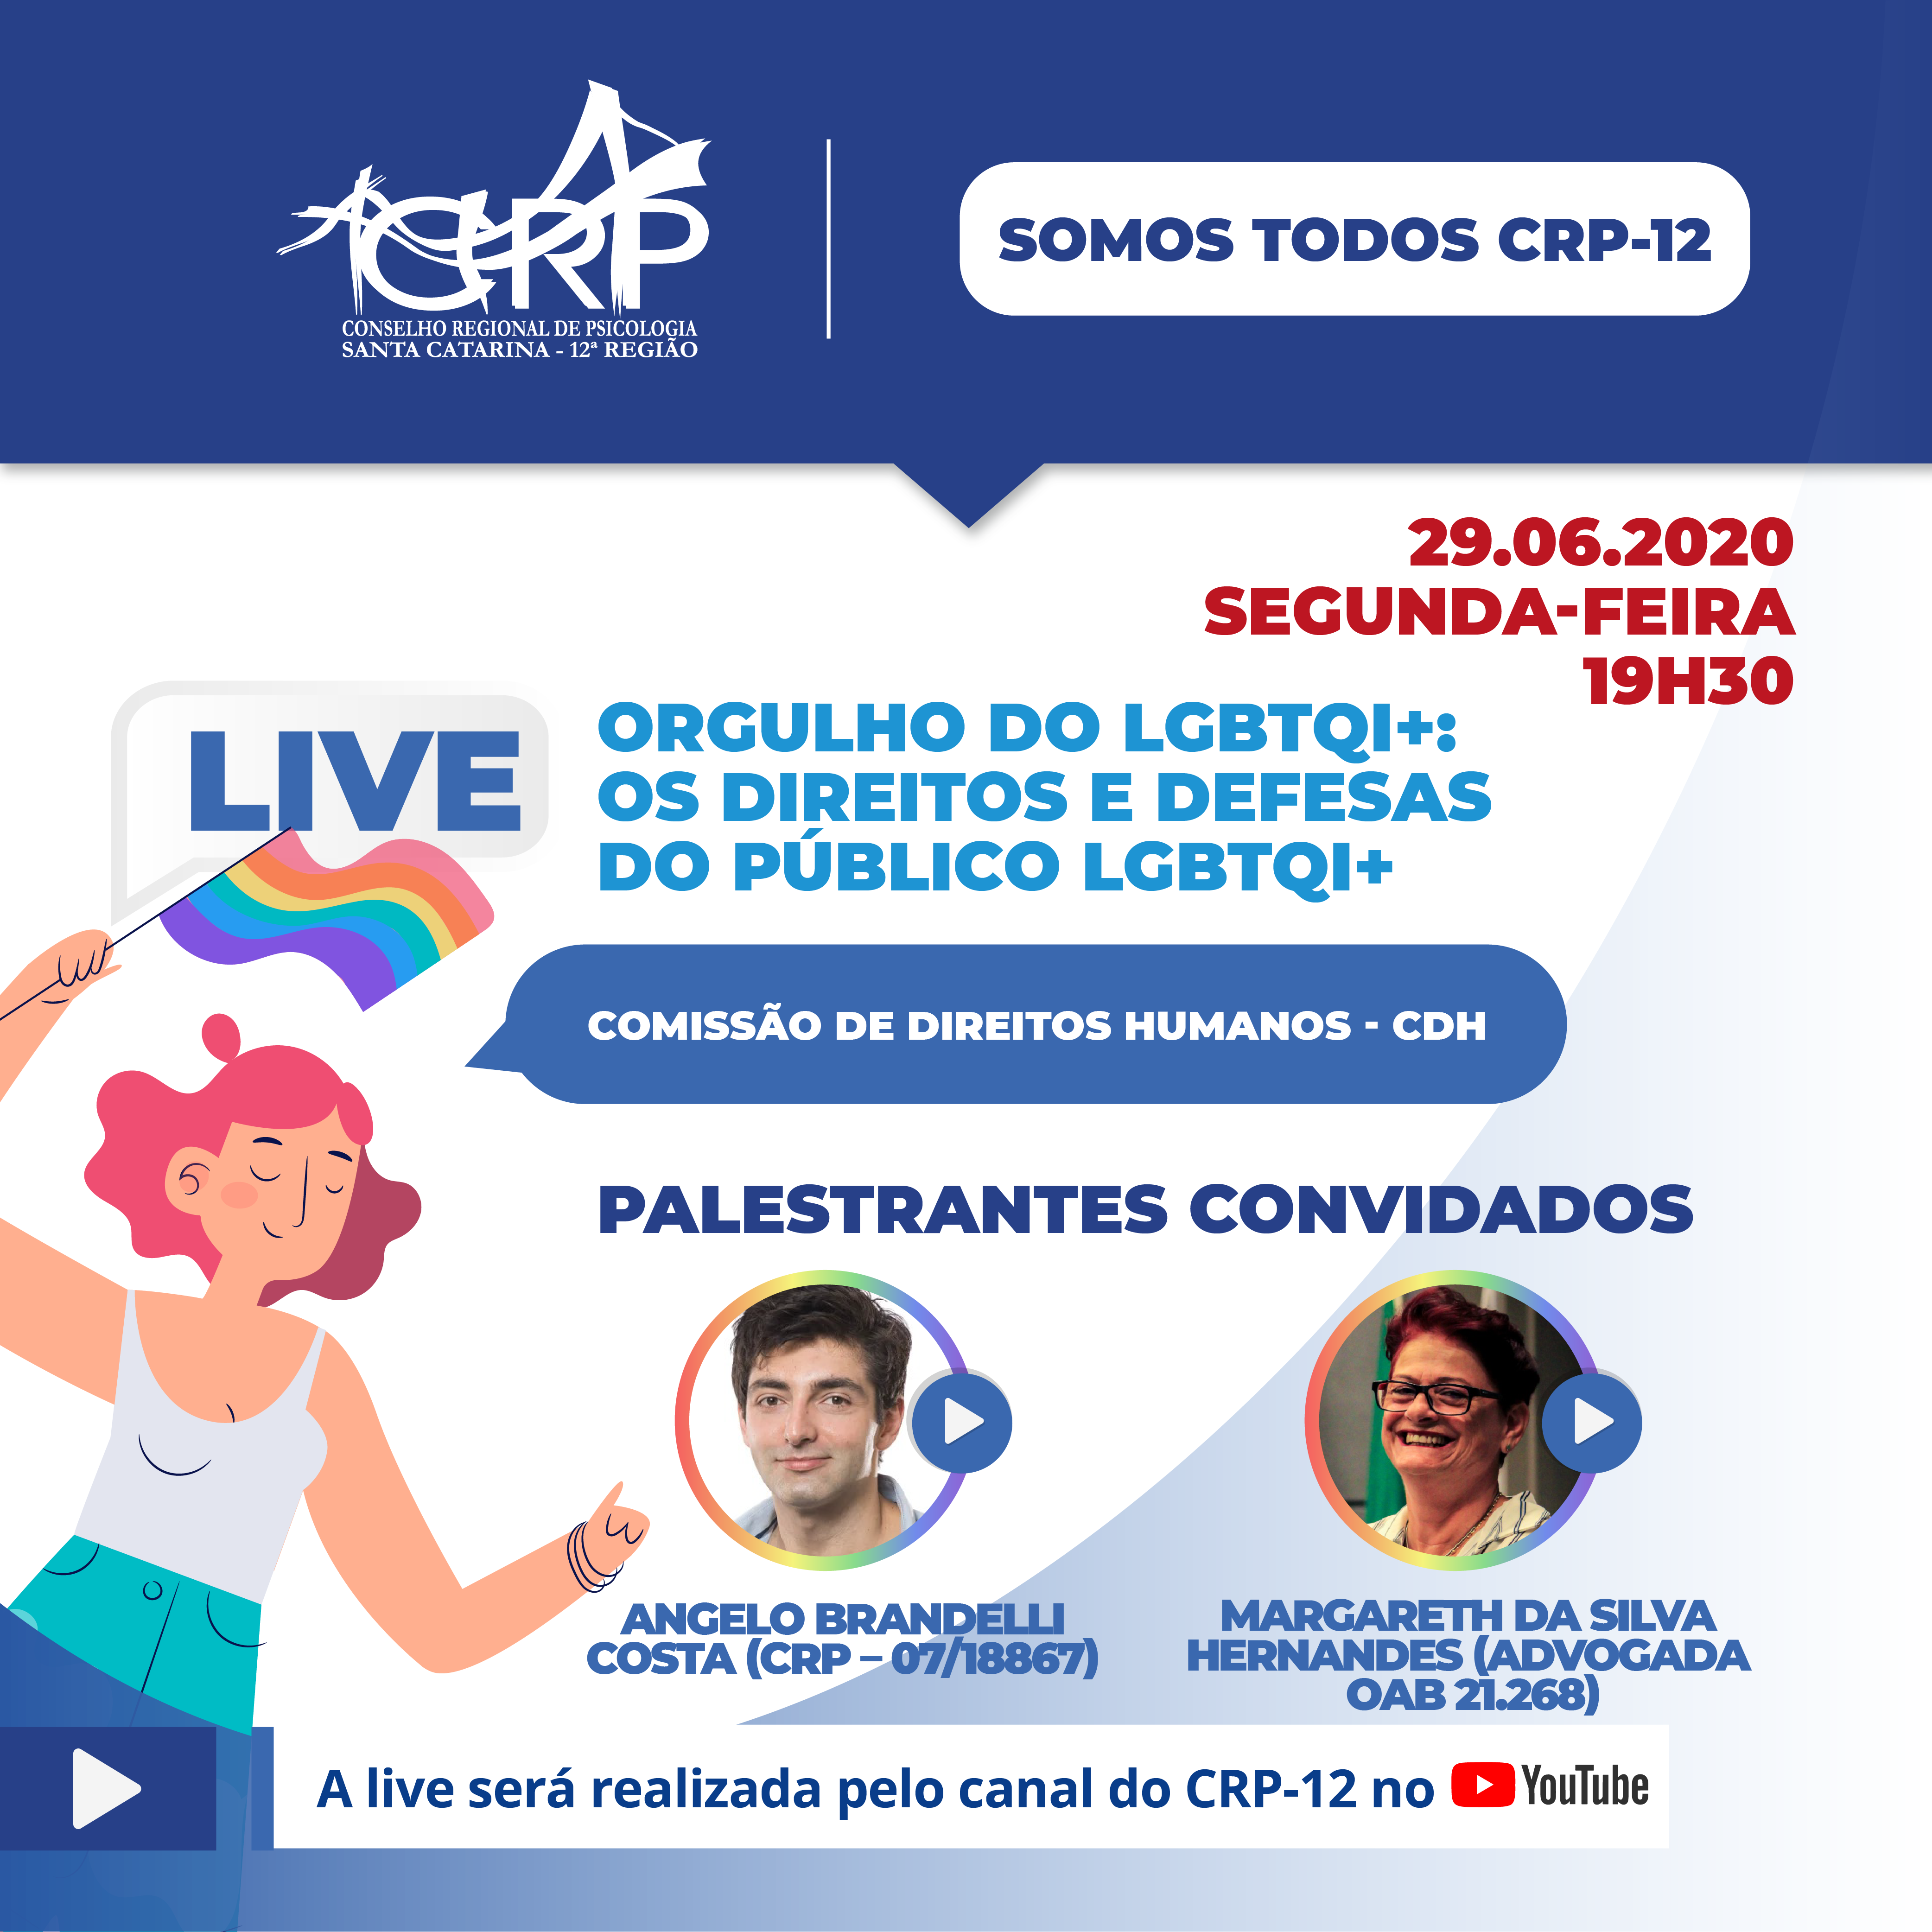 Live 29/06 - Orgulho do LGBTQI+: Os direitos e defesas do público LGBTQI+